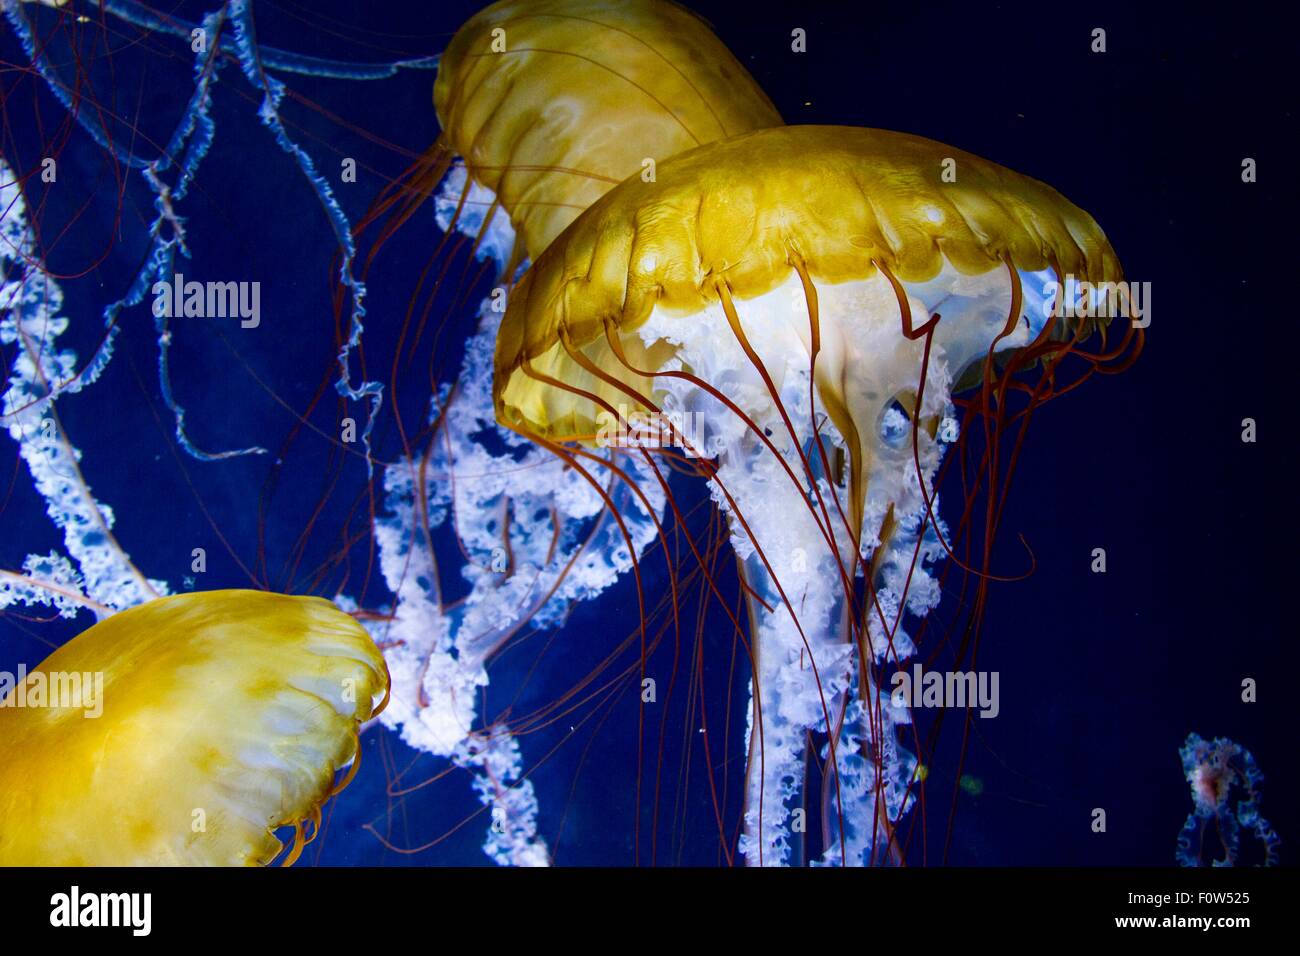 Glowing sous-vue de trois méduses jaunes en flottant sur la mer Banque D'Images